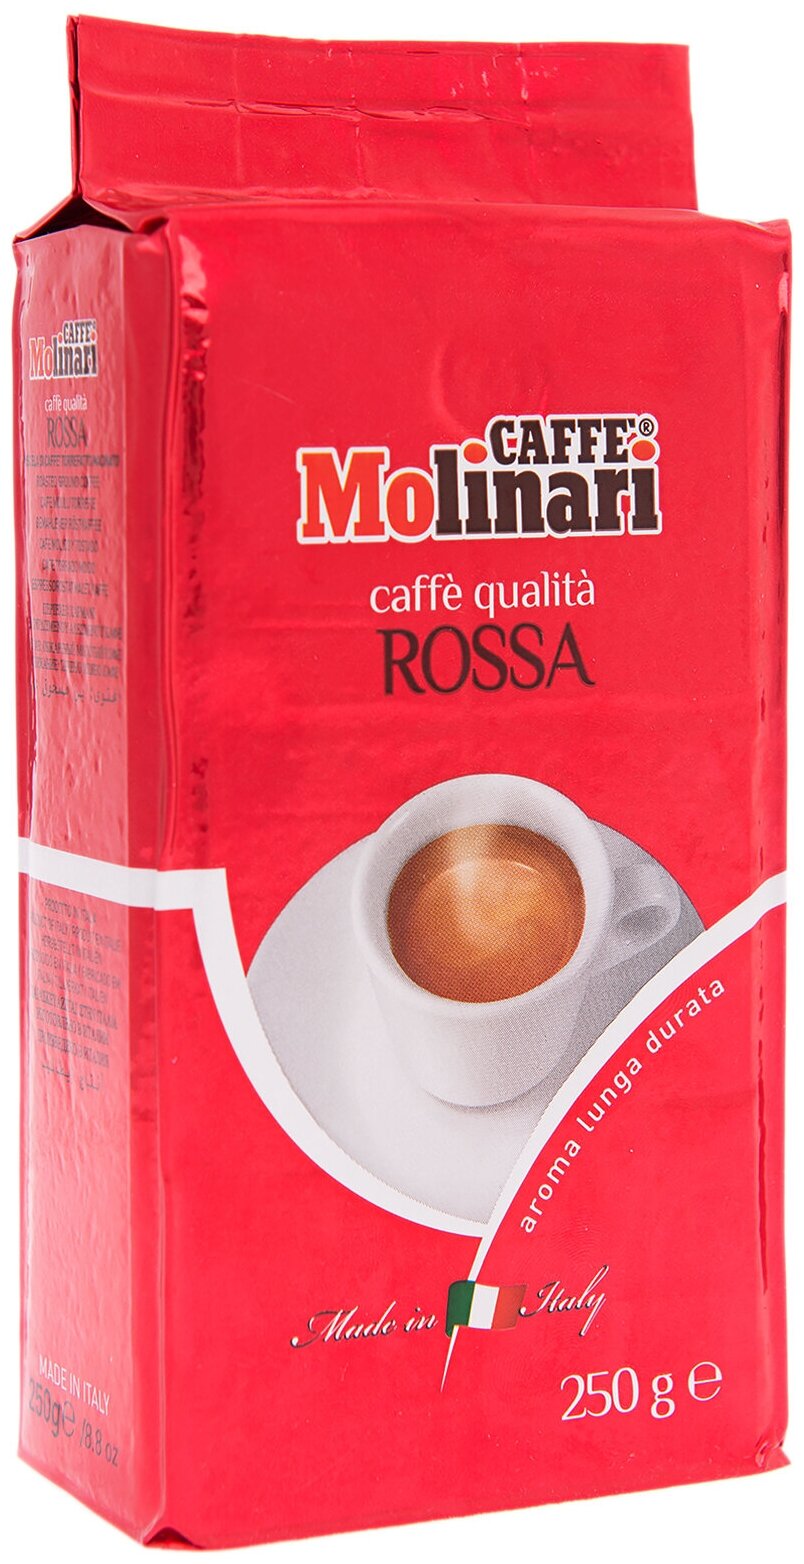 Кофе молотый Caffe Molinari ROSSA росса уп/250гр. вакуумная упаковка